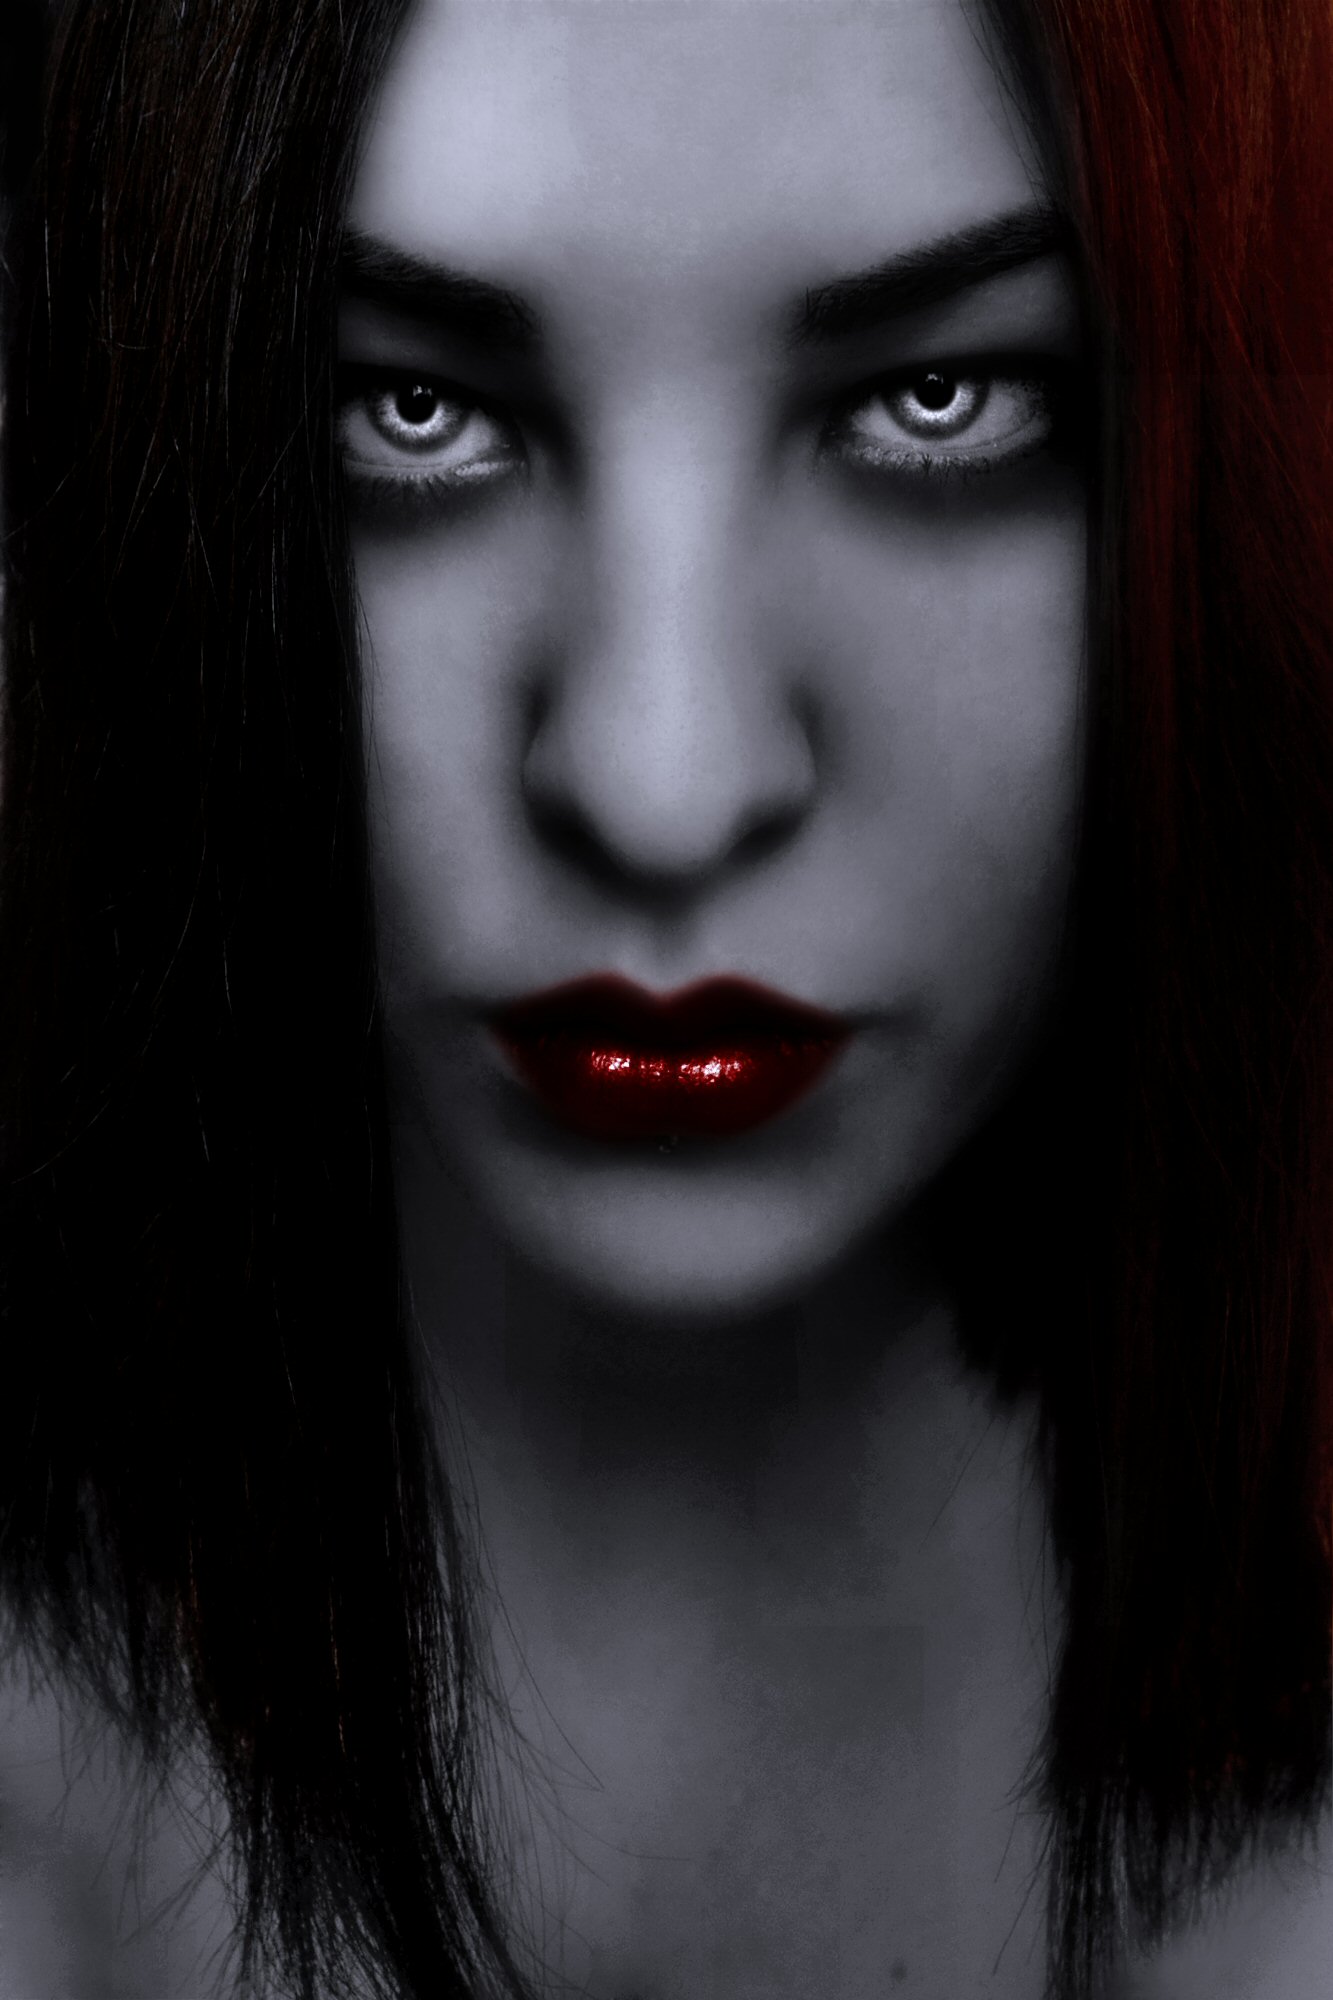 Vampire Alexandra-Hypnotic by Darkest-B4-Dawn on DeviantArt